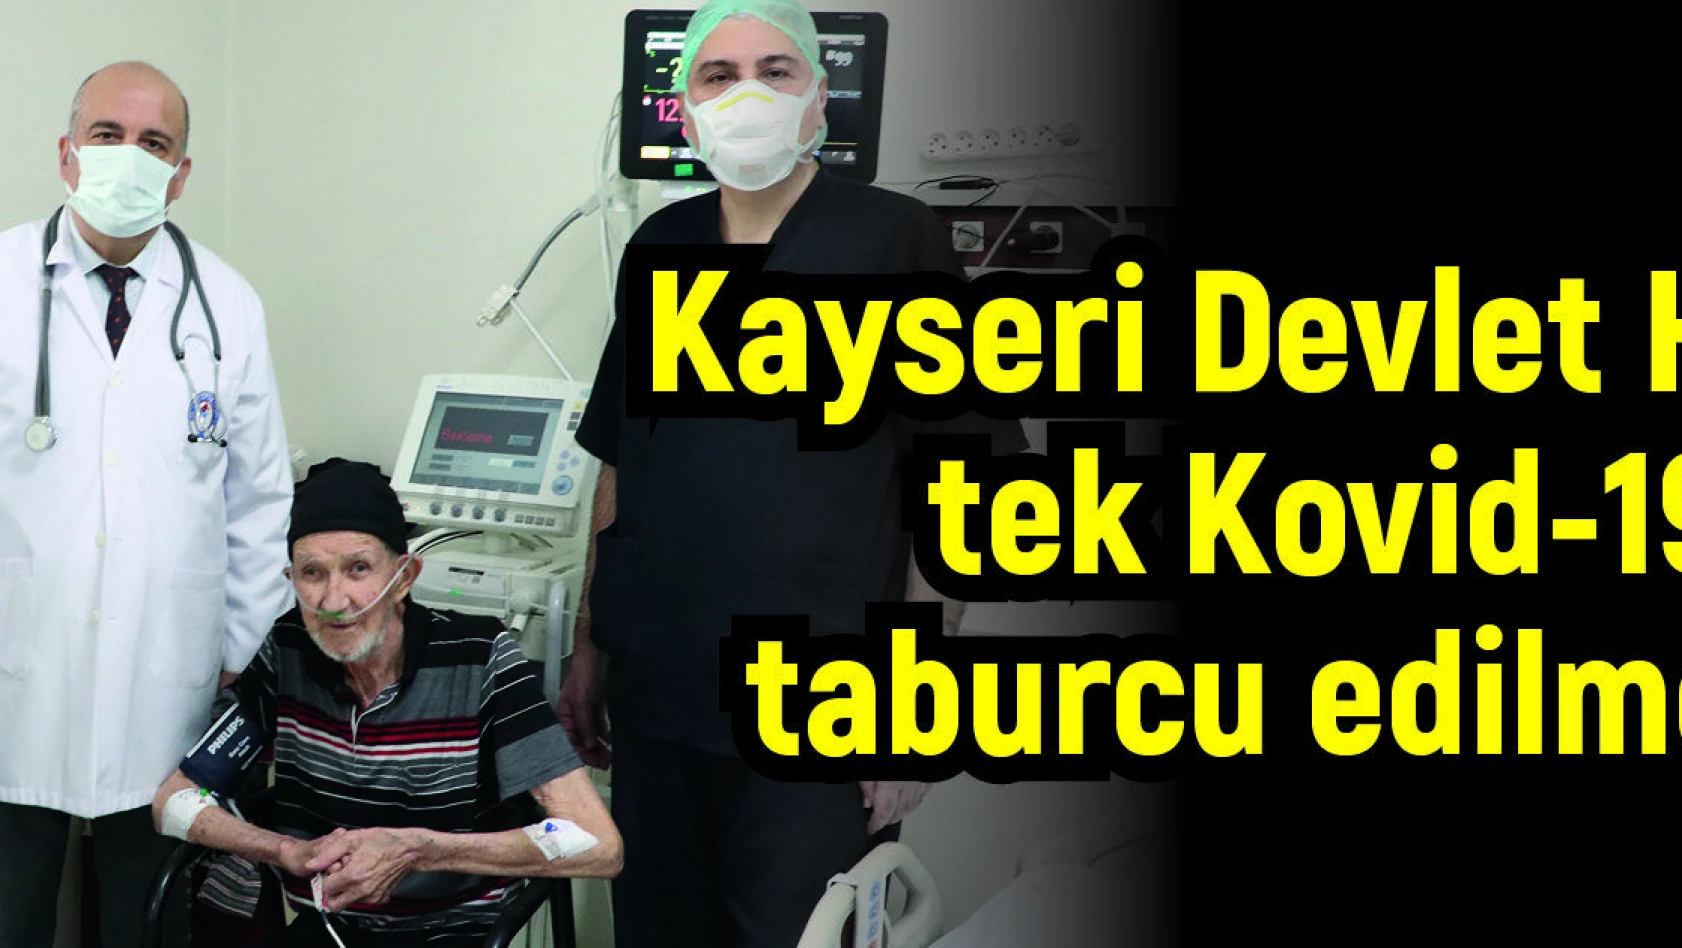 Kayseri Devlet Hastanesinin tek Kovid-19 hastası taburcu edilmeyi bekliyor